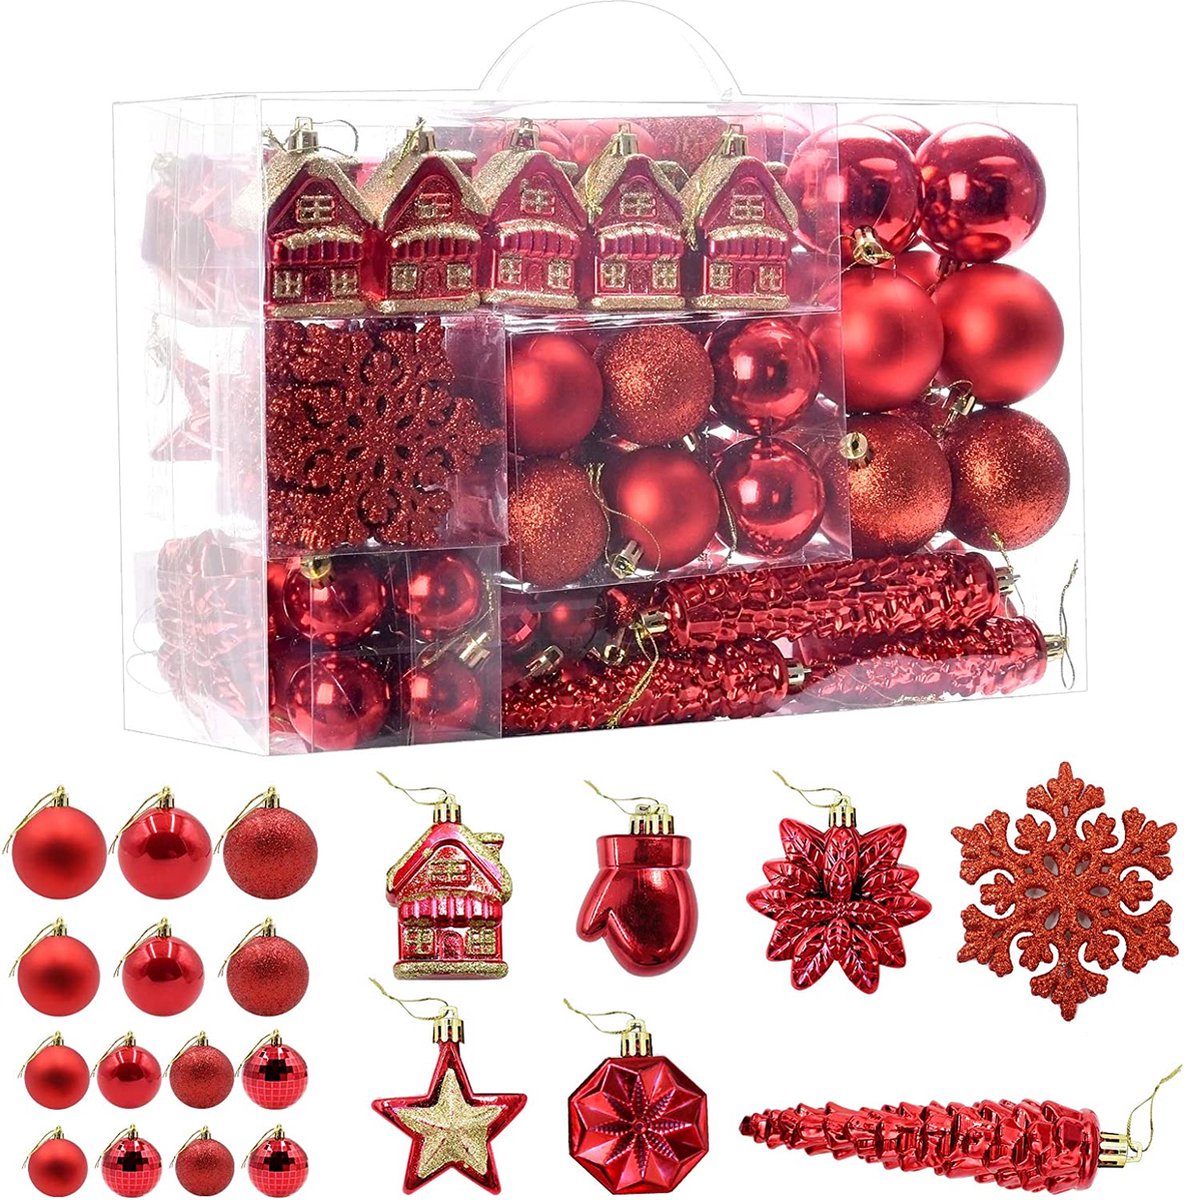 113 kerstballen, kerstboomversiering, ophanging, kerstballen voor de kerstboom, kerstboomversiering, kerstballen (rood)